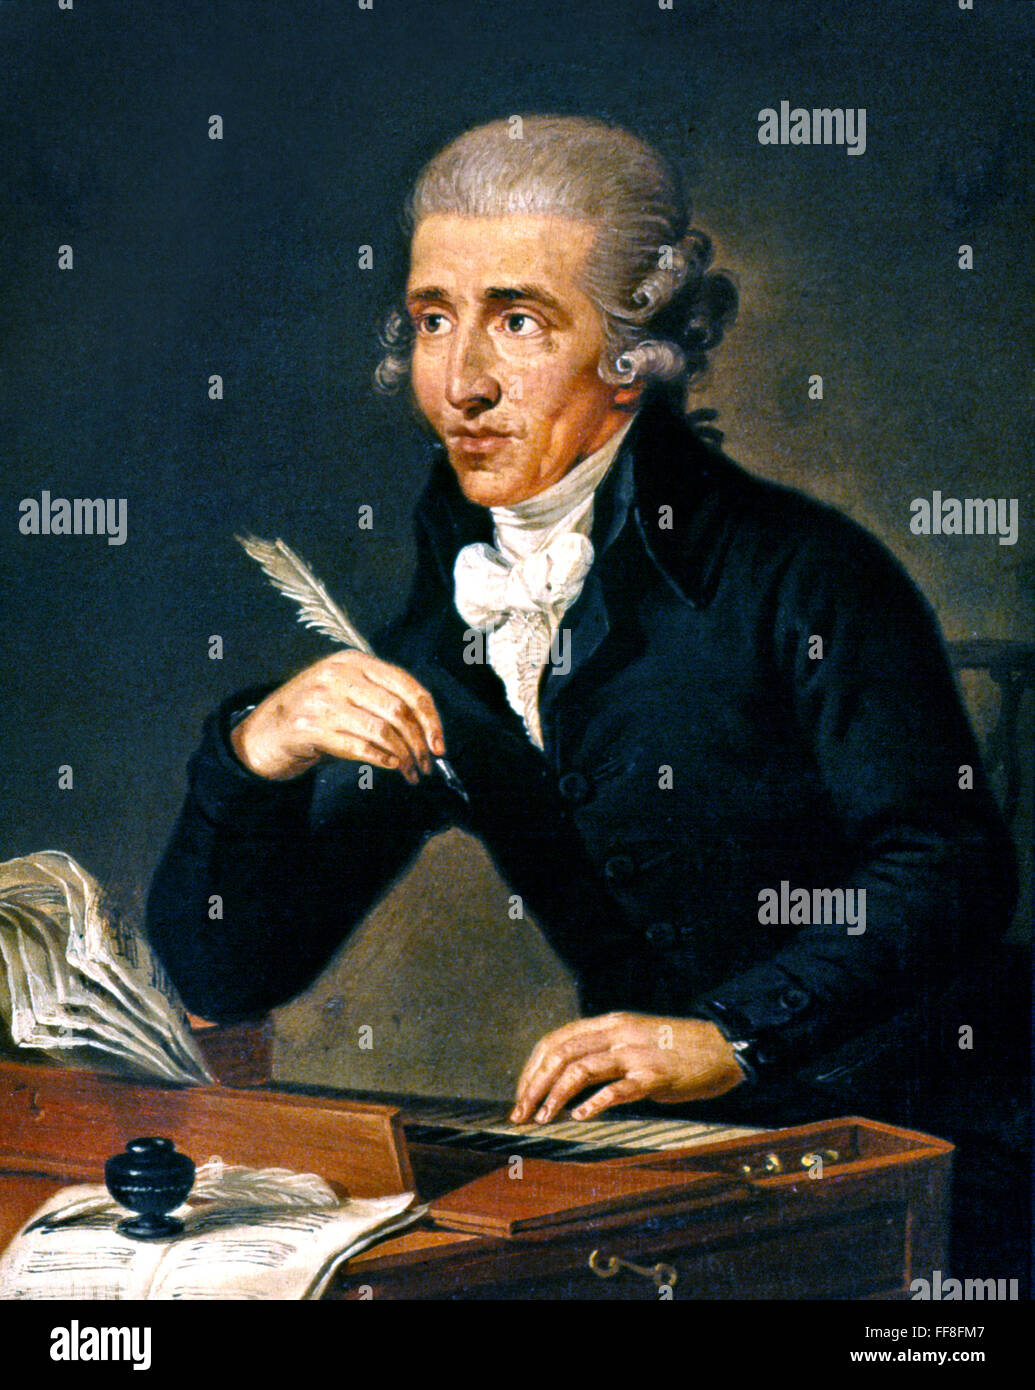 Родоначальник классической симфонии. Йозеф Гайдн. Франз юзев Гайев (1732-1809). Портрет Йозефа Гайдна композитора.